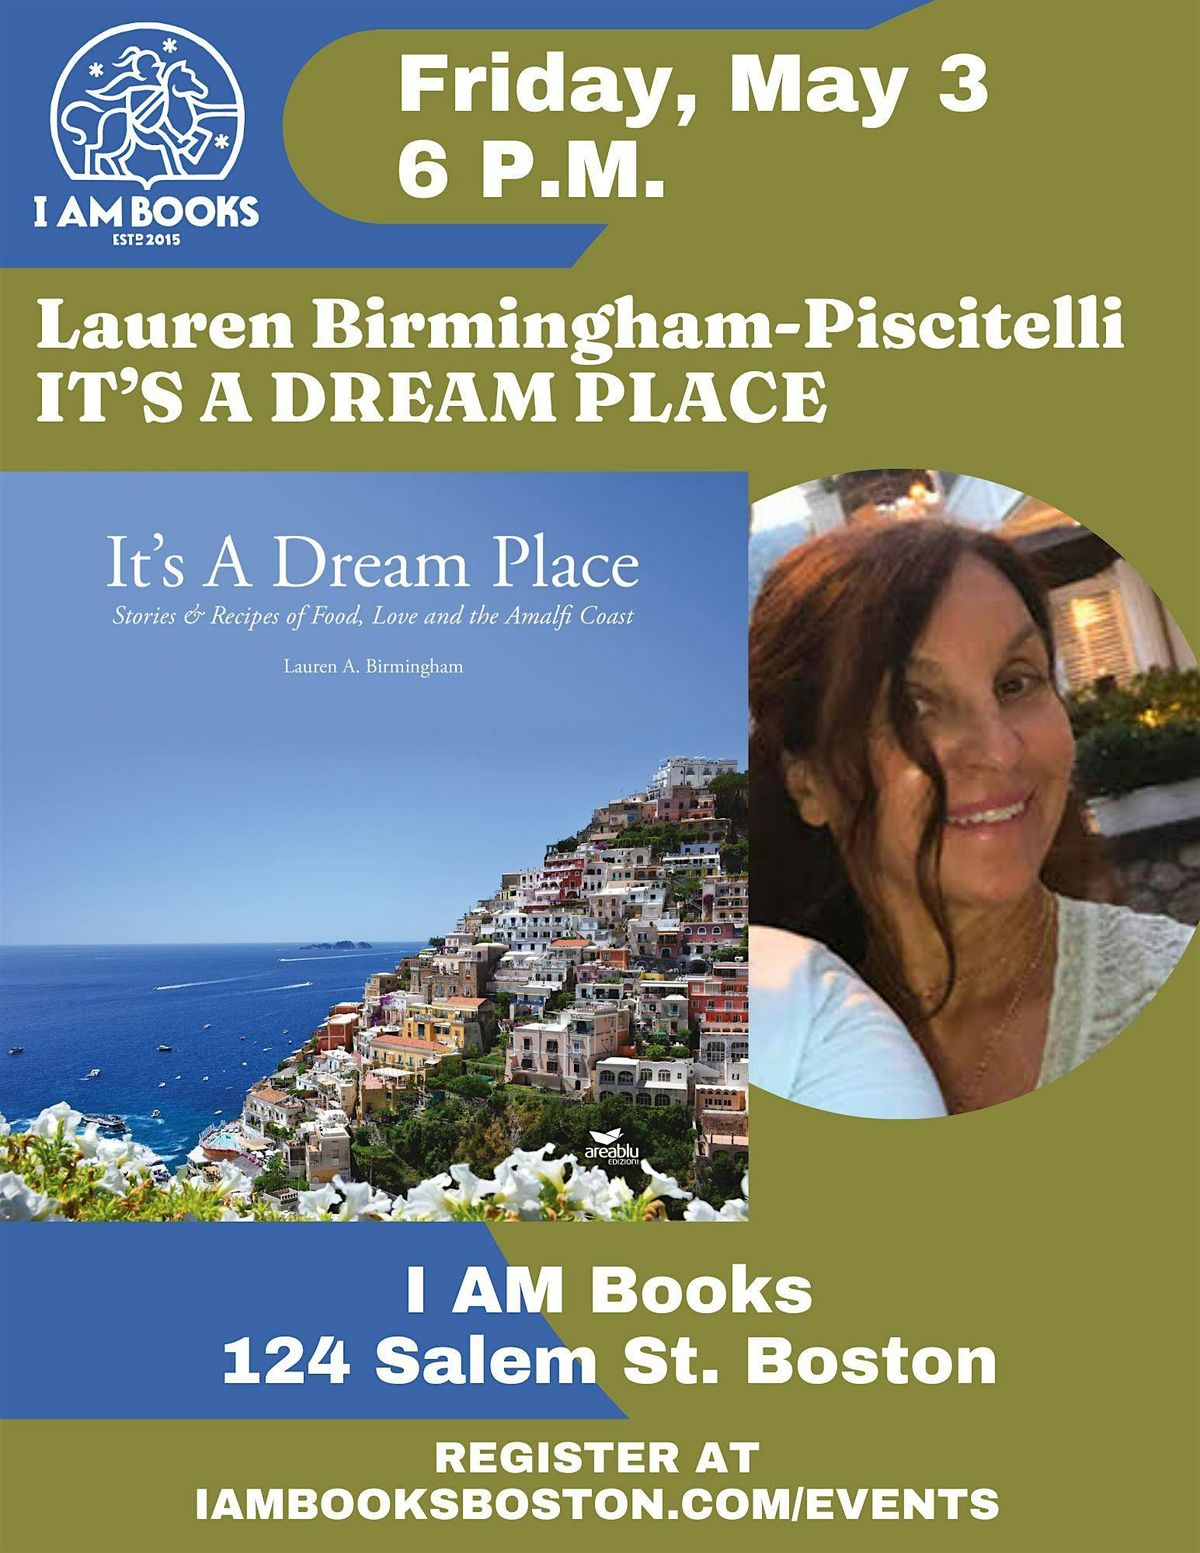 It's a Dream Place! Lauren Birmingham-Piscitelli